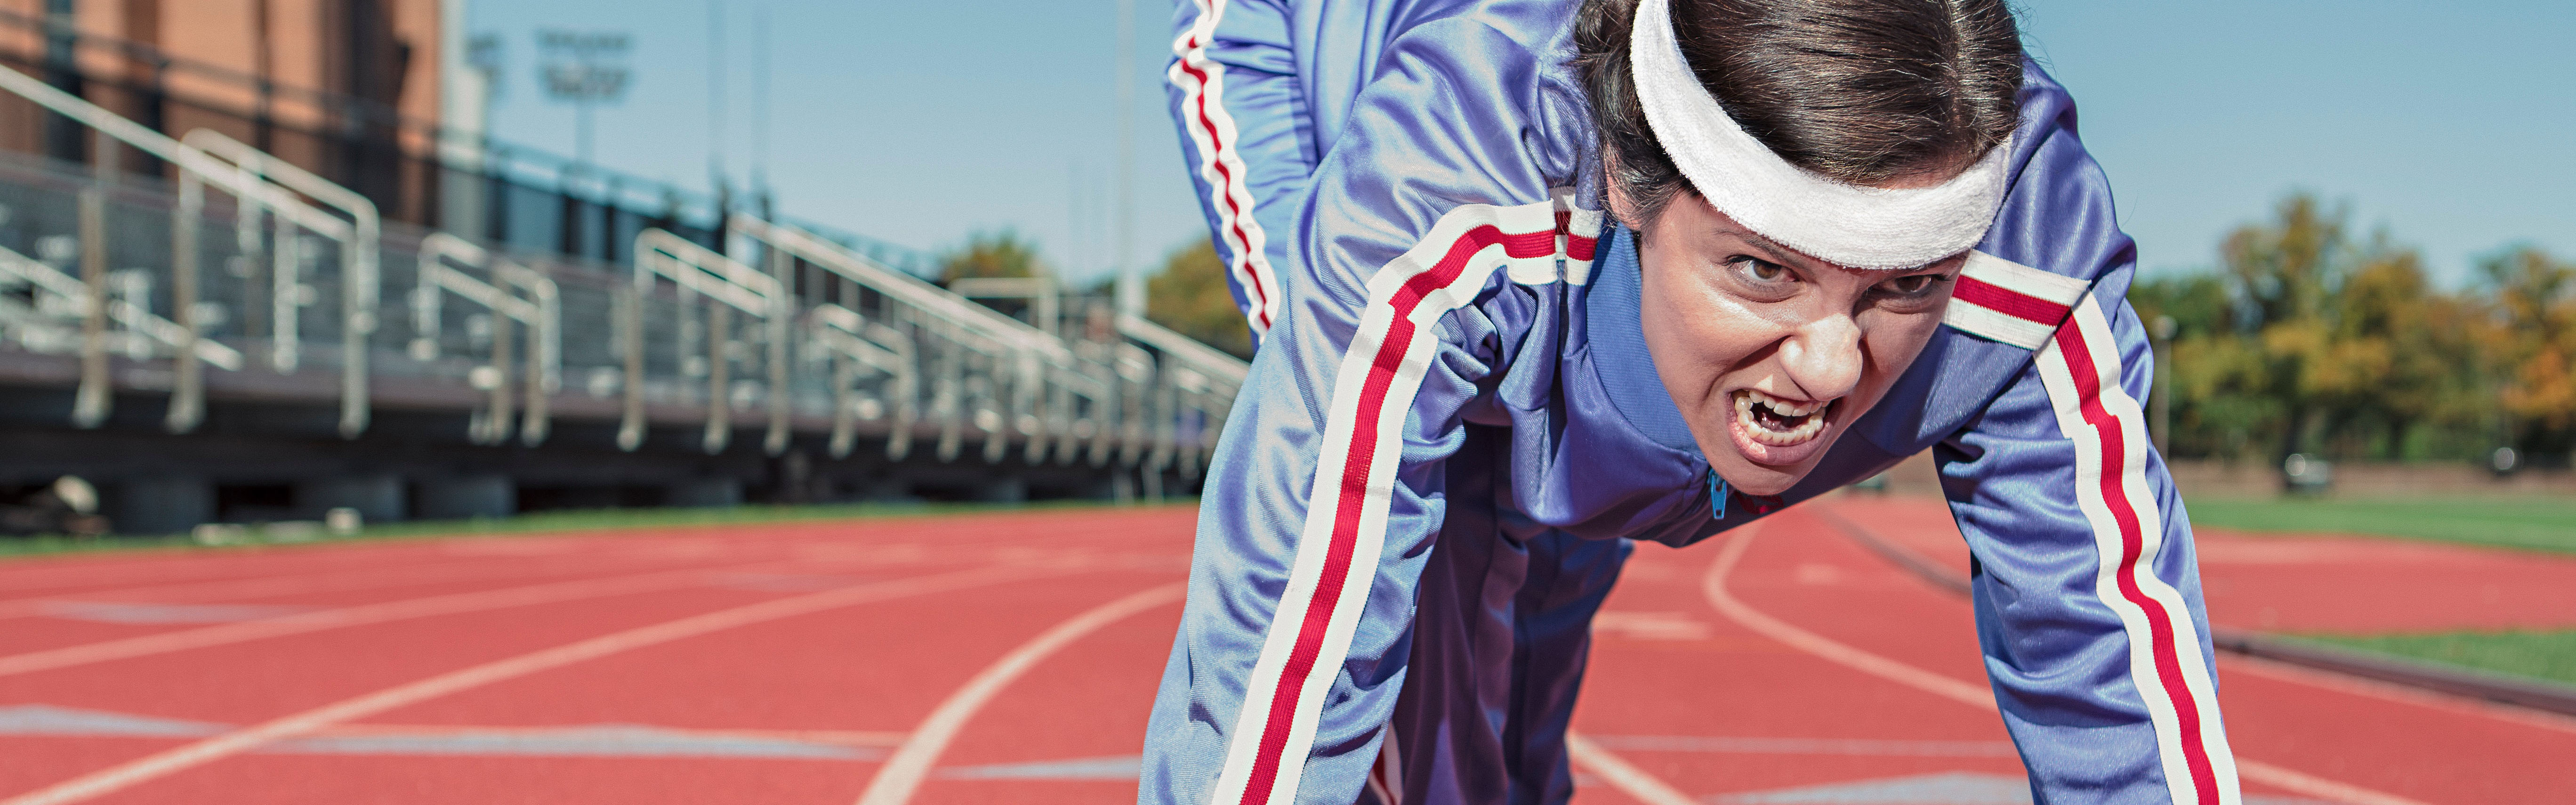 Intense runner on a track, illustrating setting a goal for split testing on Facebook